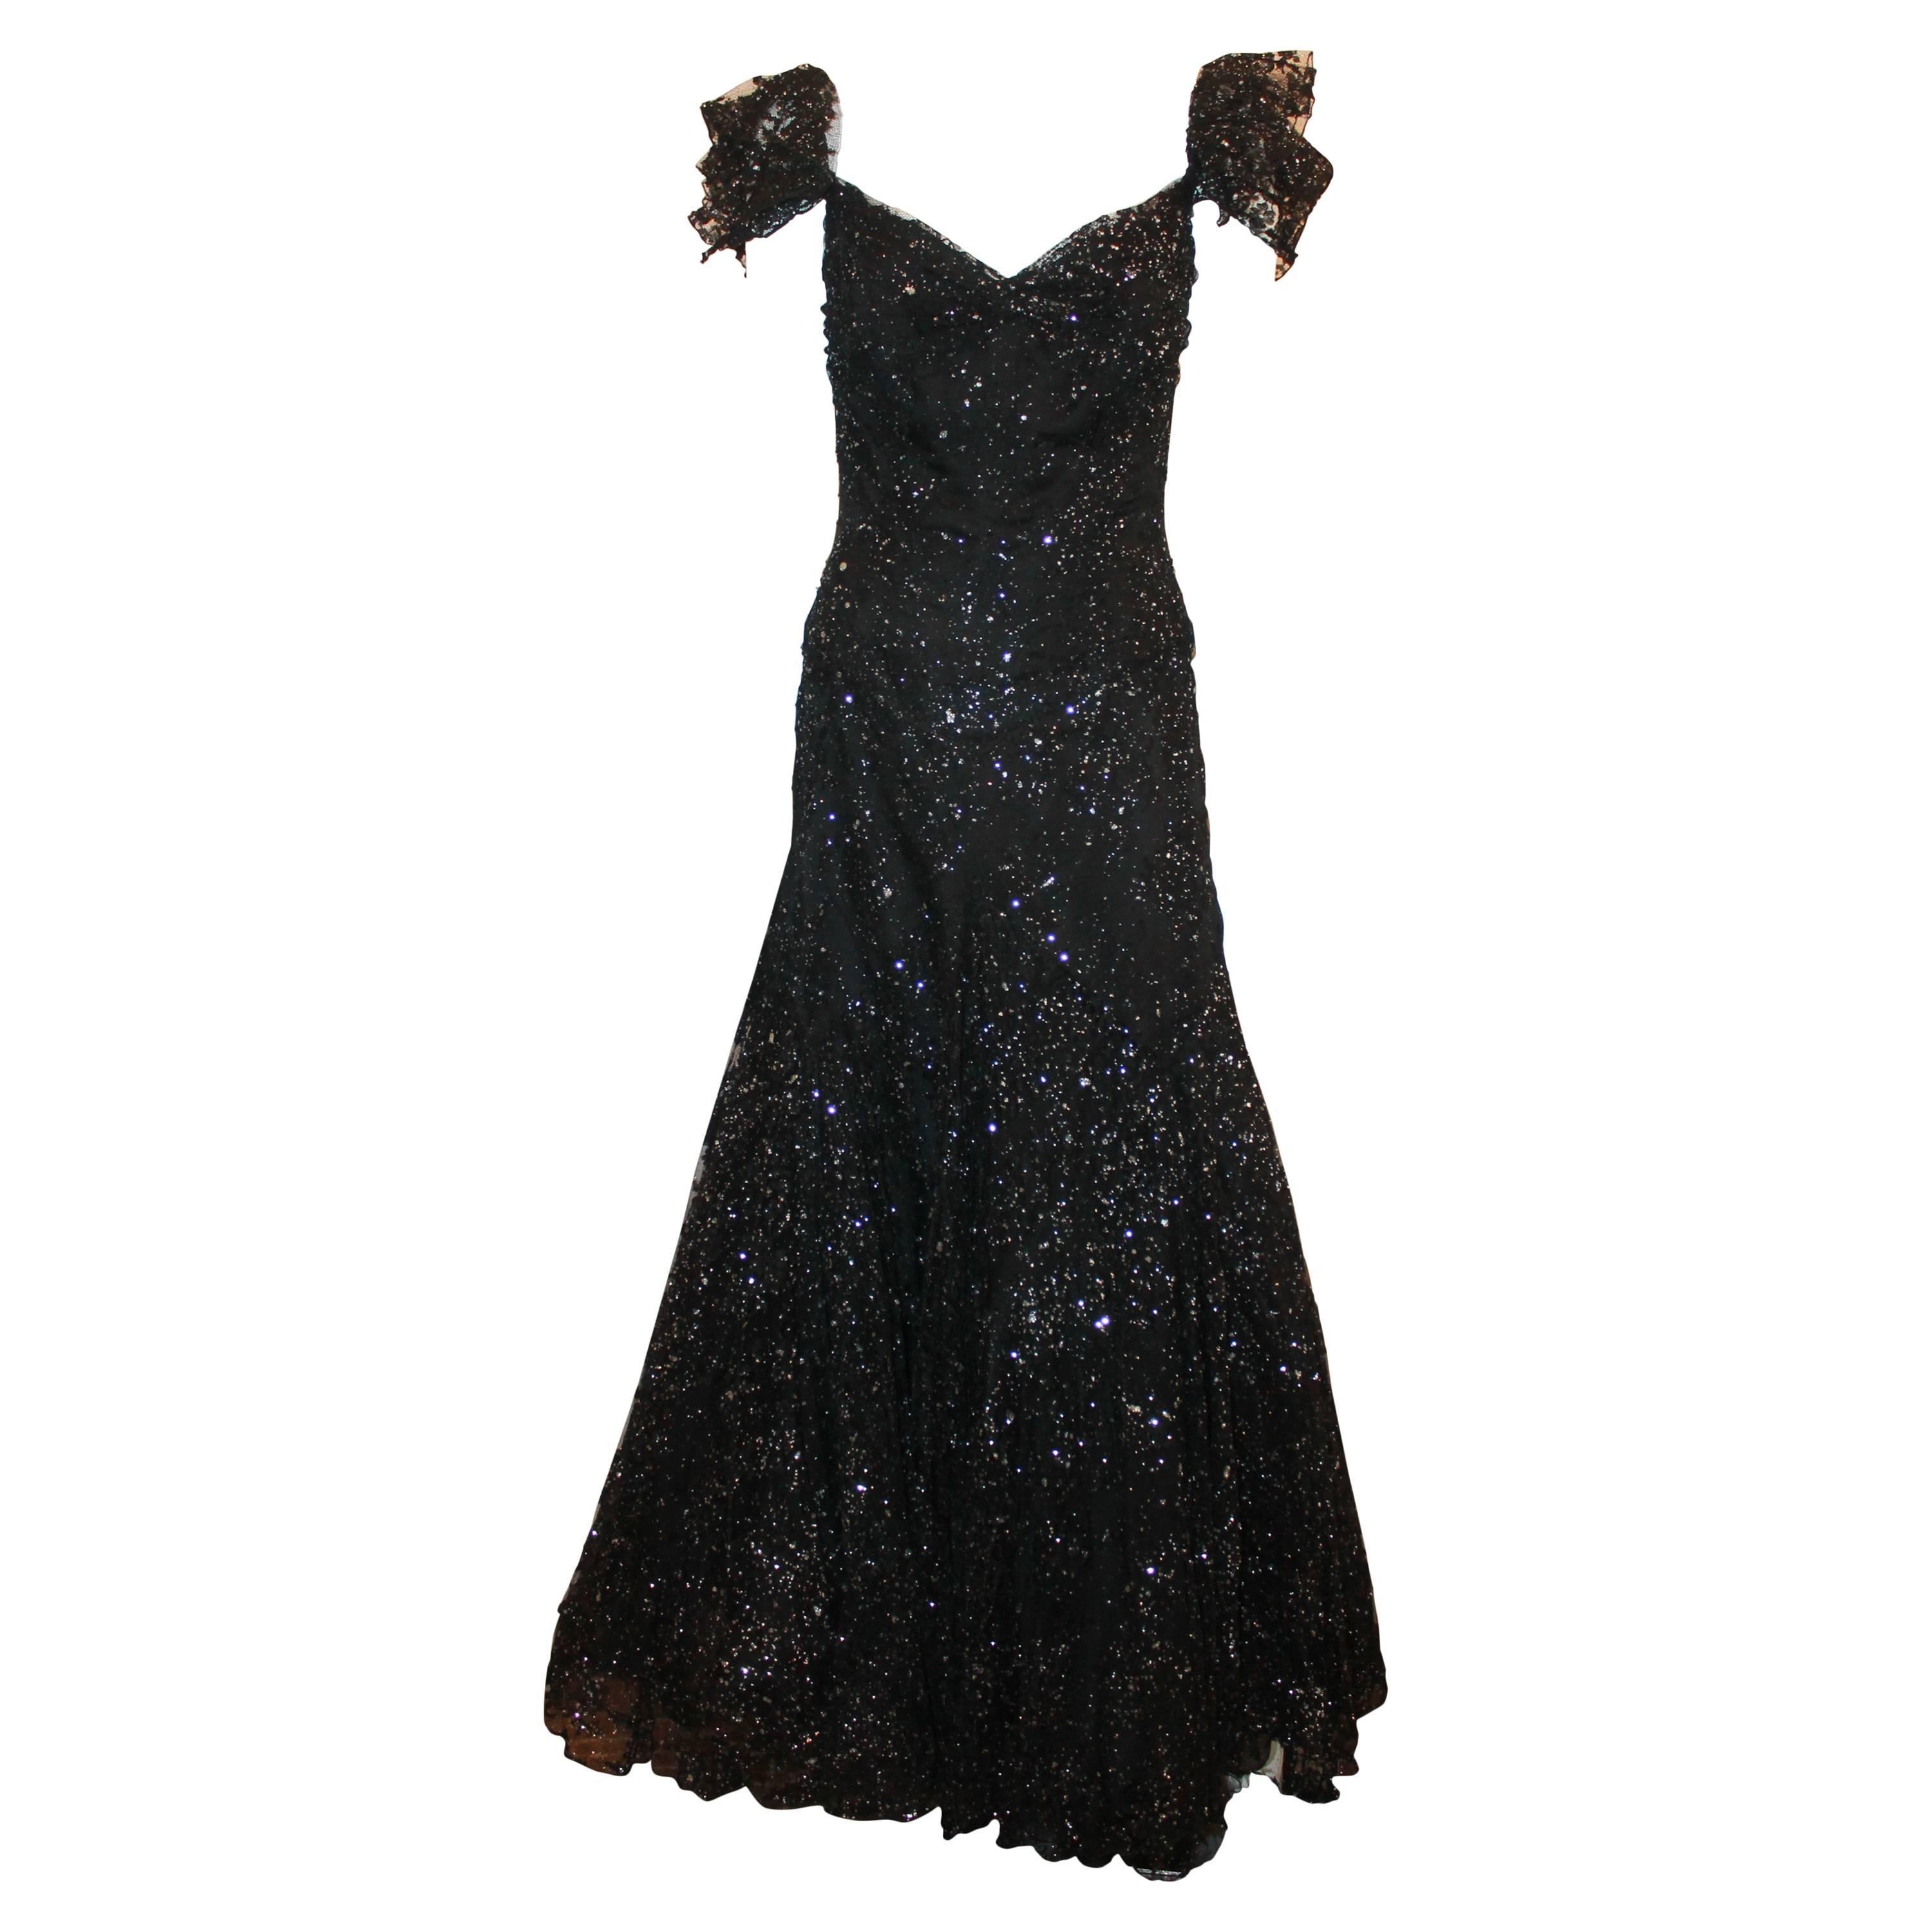 Vicky Tiel Black and Silver Tulle Lace Off the Shoulder Gown - 42.  Cette magnifique robe est en excellent état.  Il présente un magnifique tulle noir avec des accents argentés, un corset intégré aux hanches, une sangle élastique réglable à volants